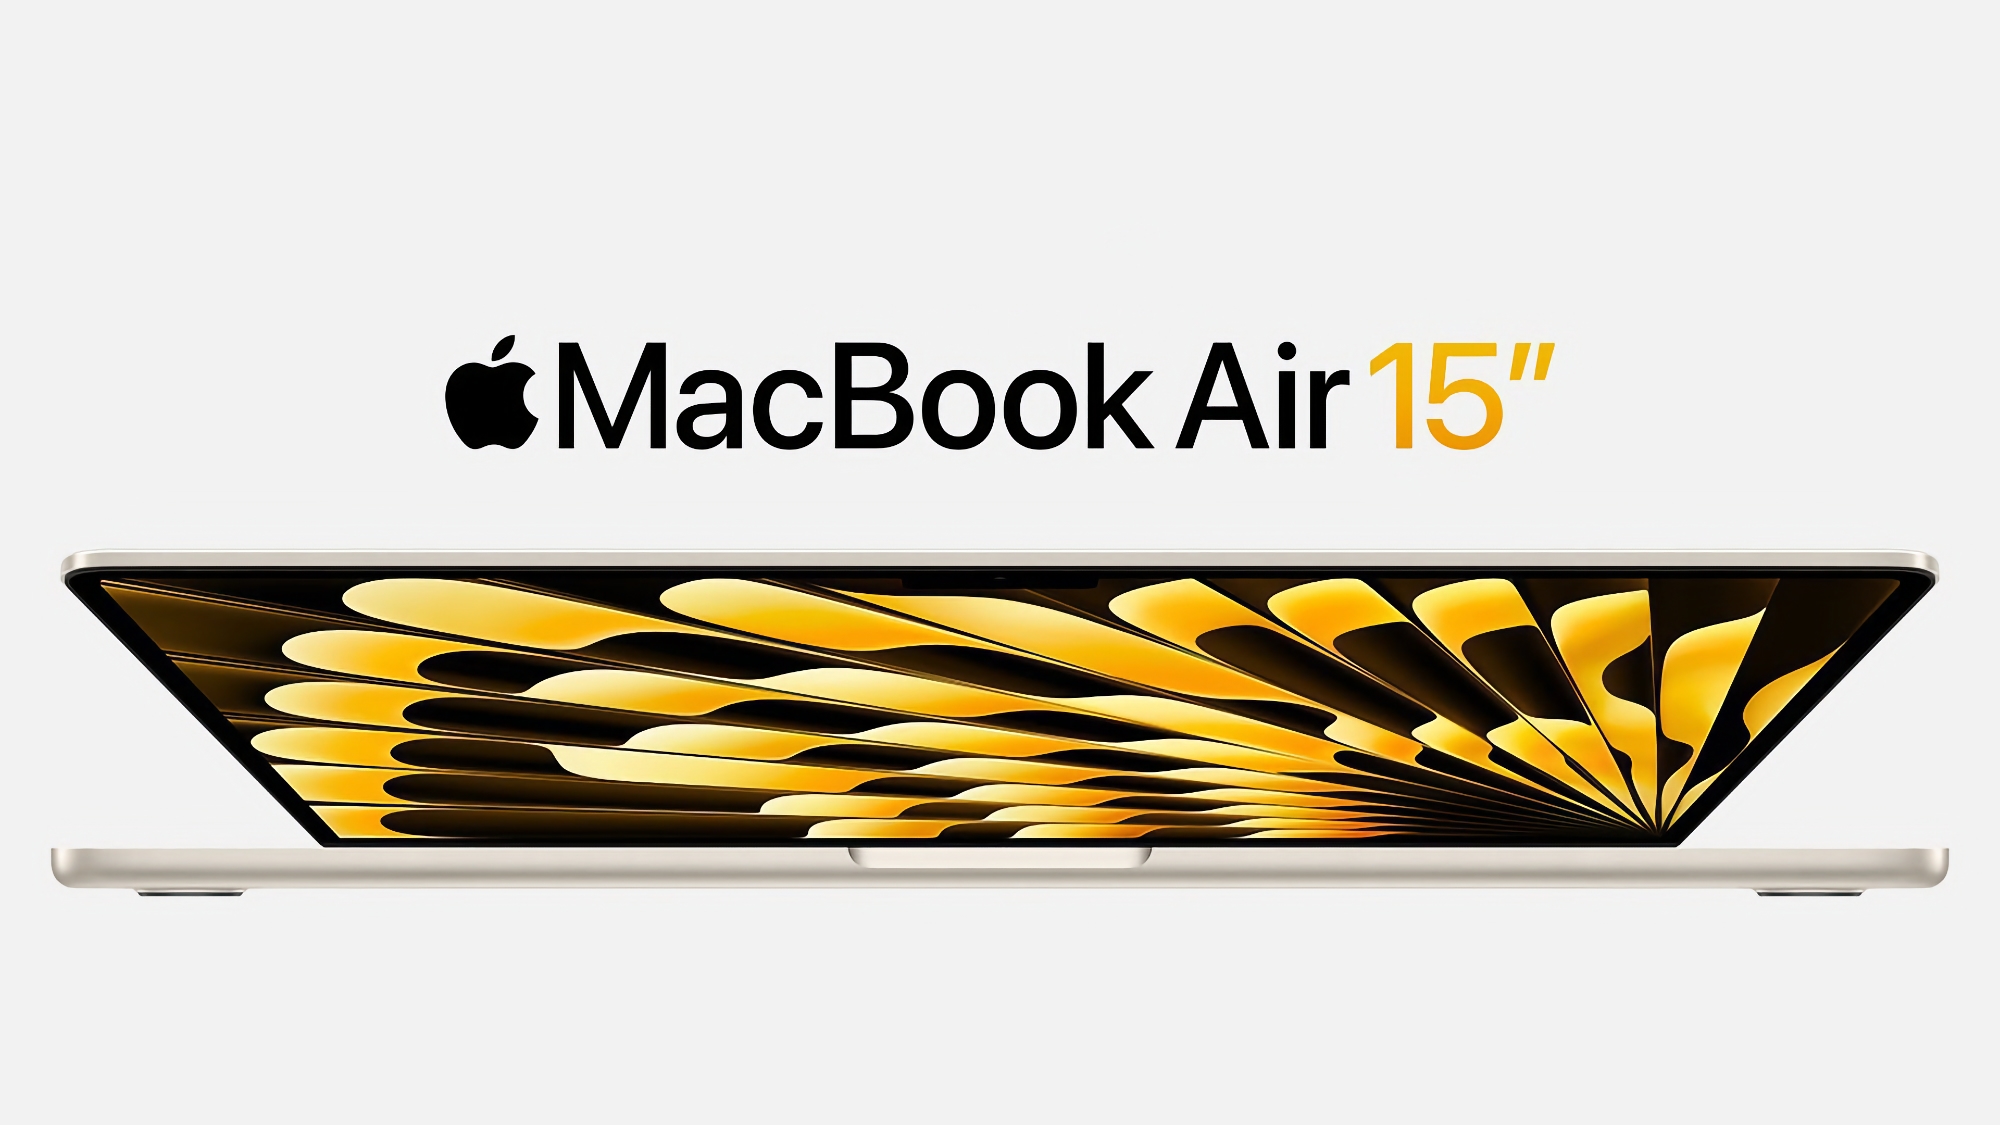 15-tommer MacBook Air fås på Amazon med 200 dollars rabat